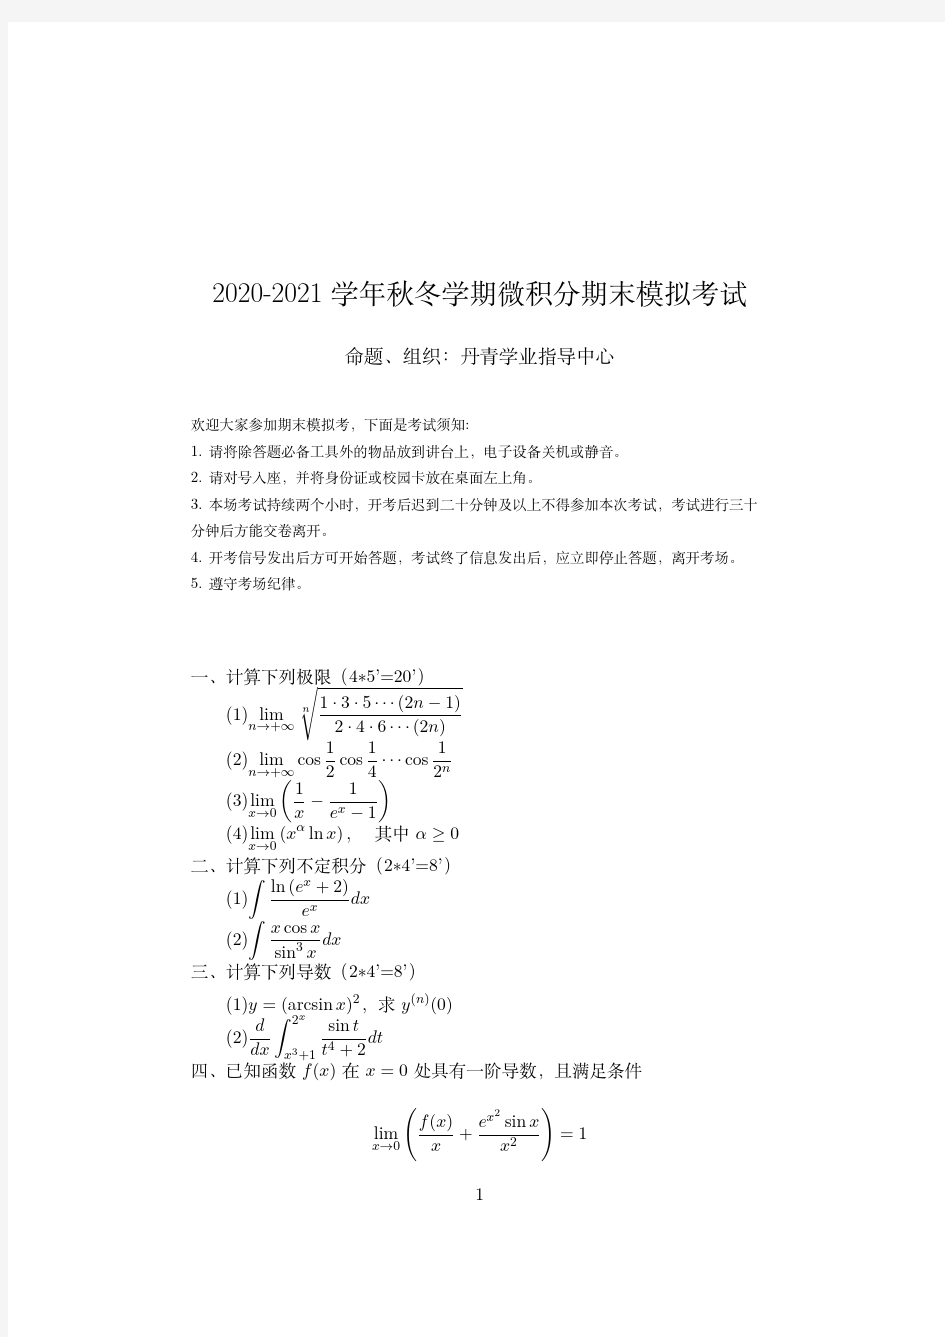 浙江大学2020-2021学年秋冬学期期末模拟考试《微积分》试卷及答案解析